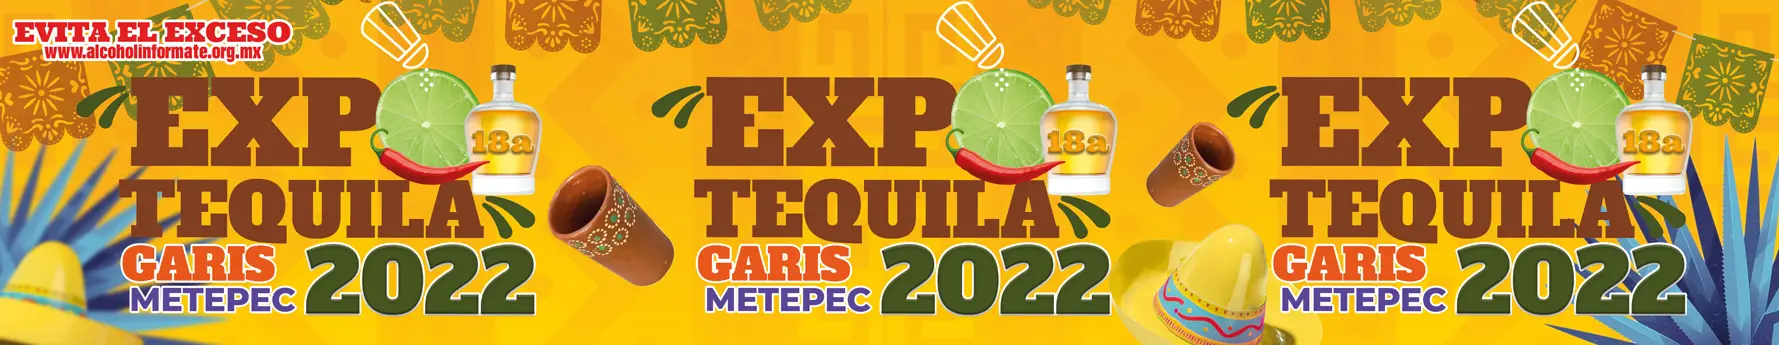 Expo Tequila 